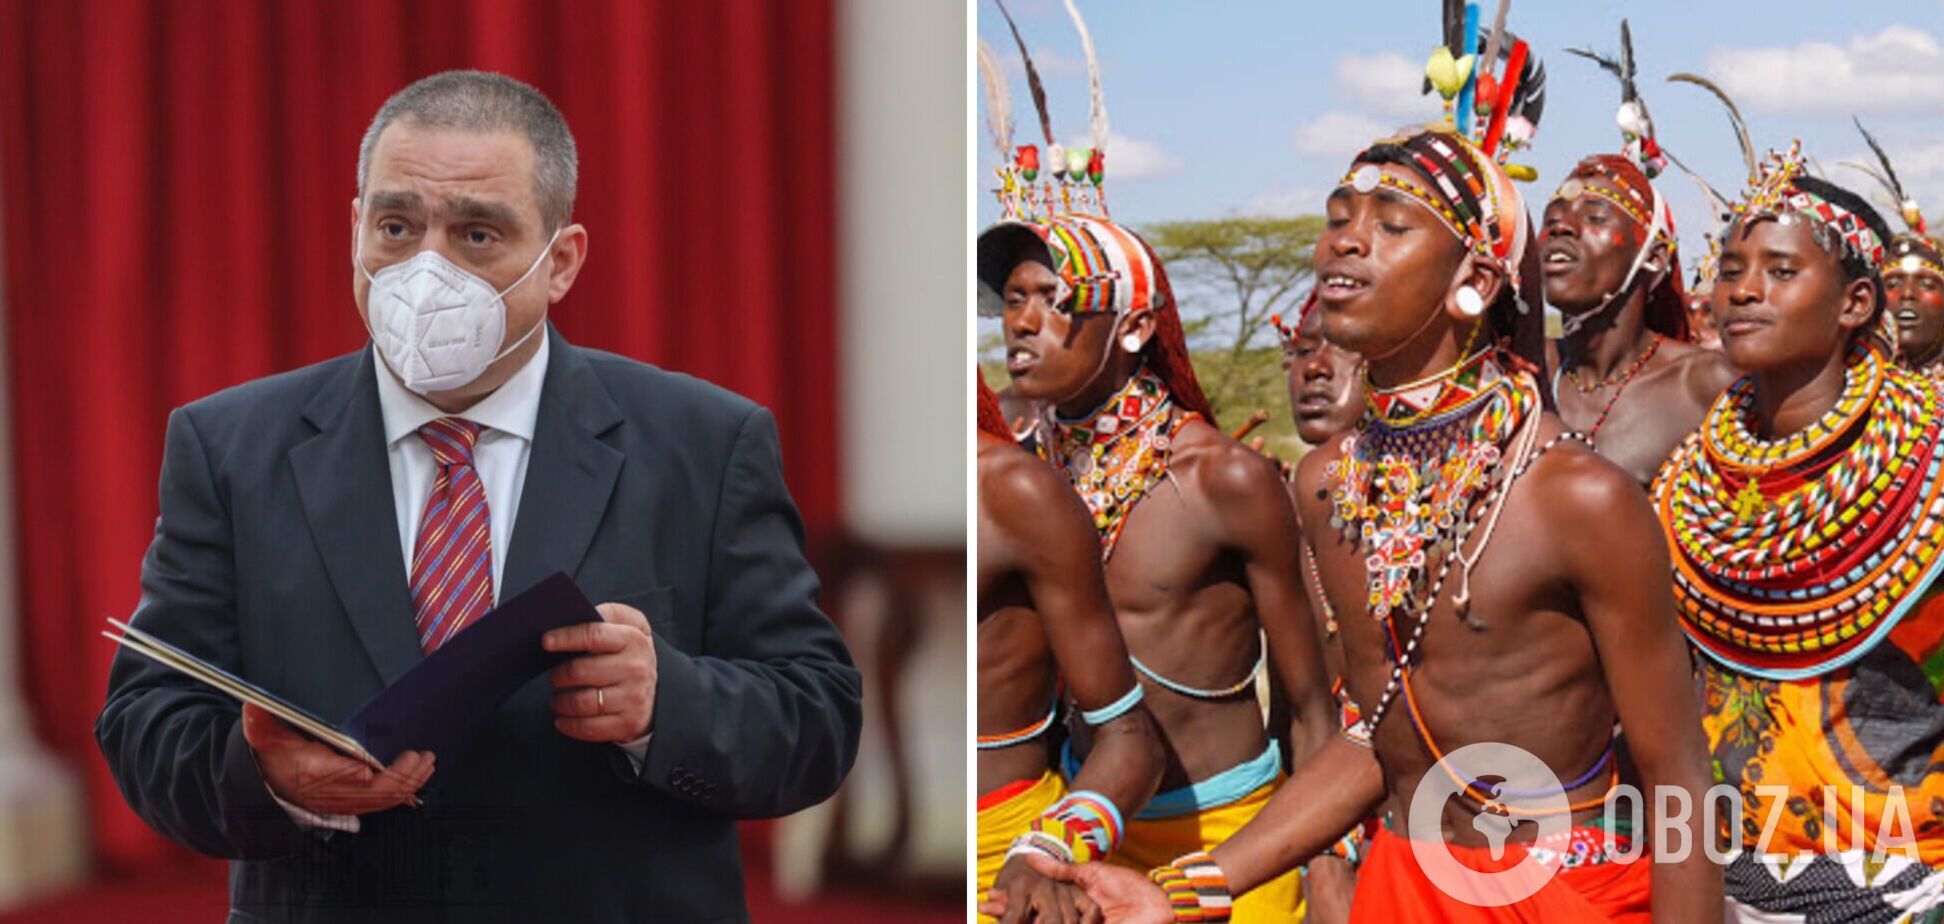 Сравнил африканцев с обезьянами: посол Румынии в Кении попал в расистский скандал